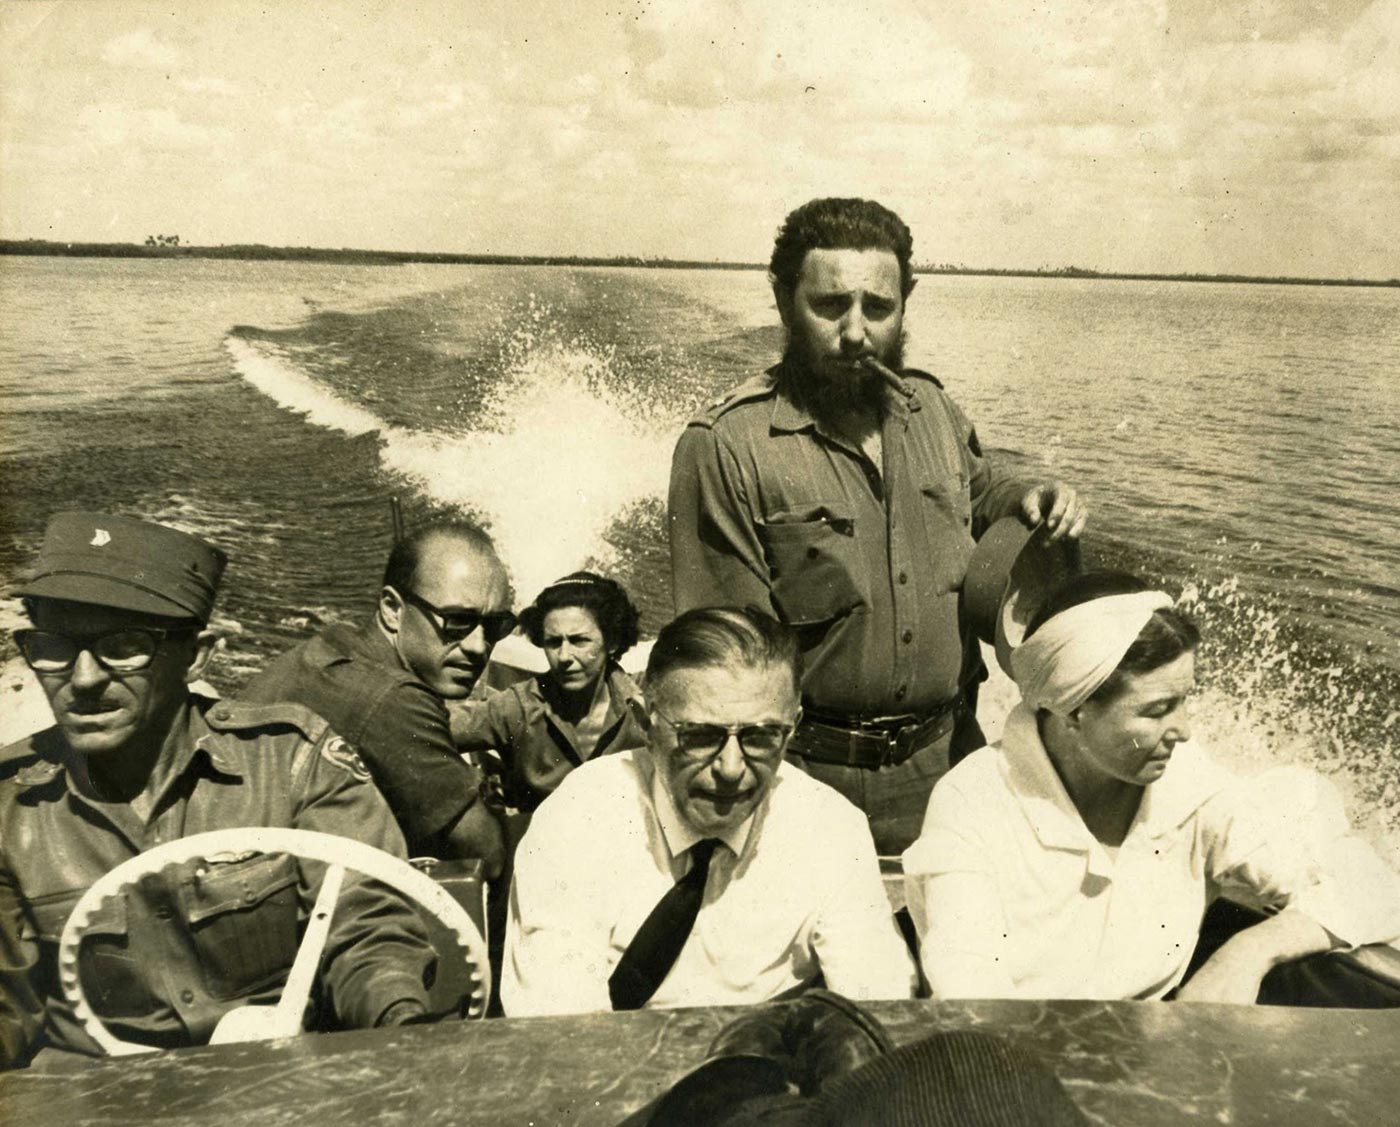 Sartre & de Beauvoir besöker Che Guevara på Kuba 1960.